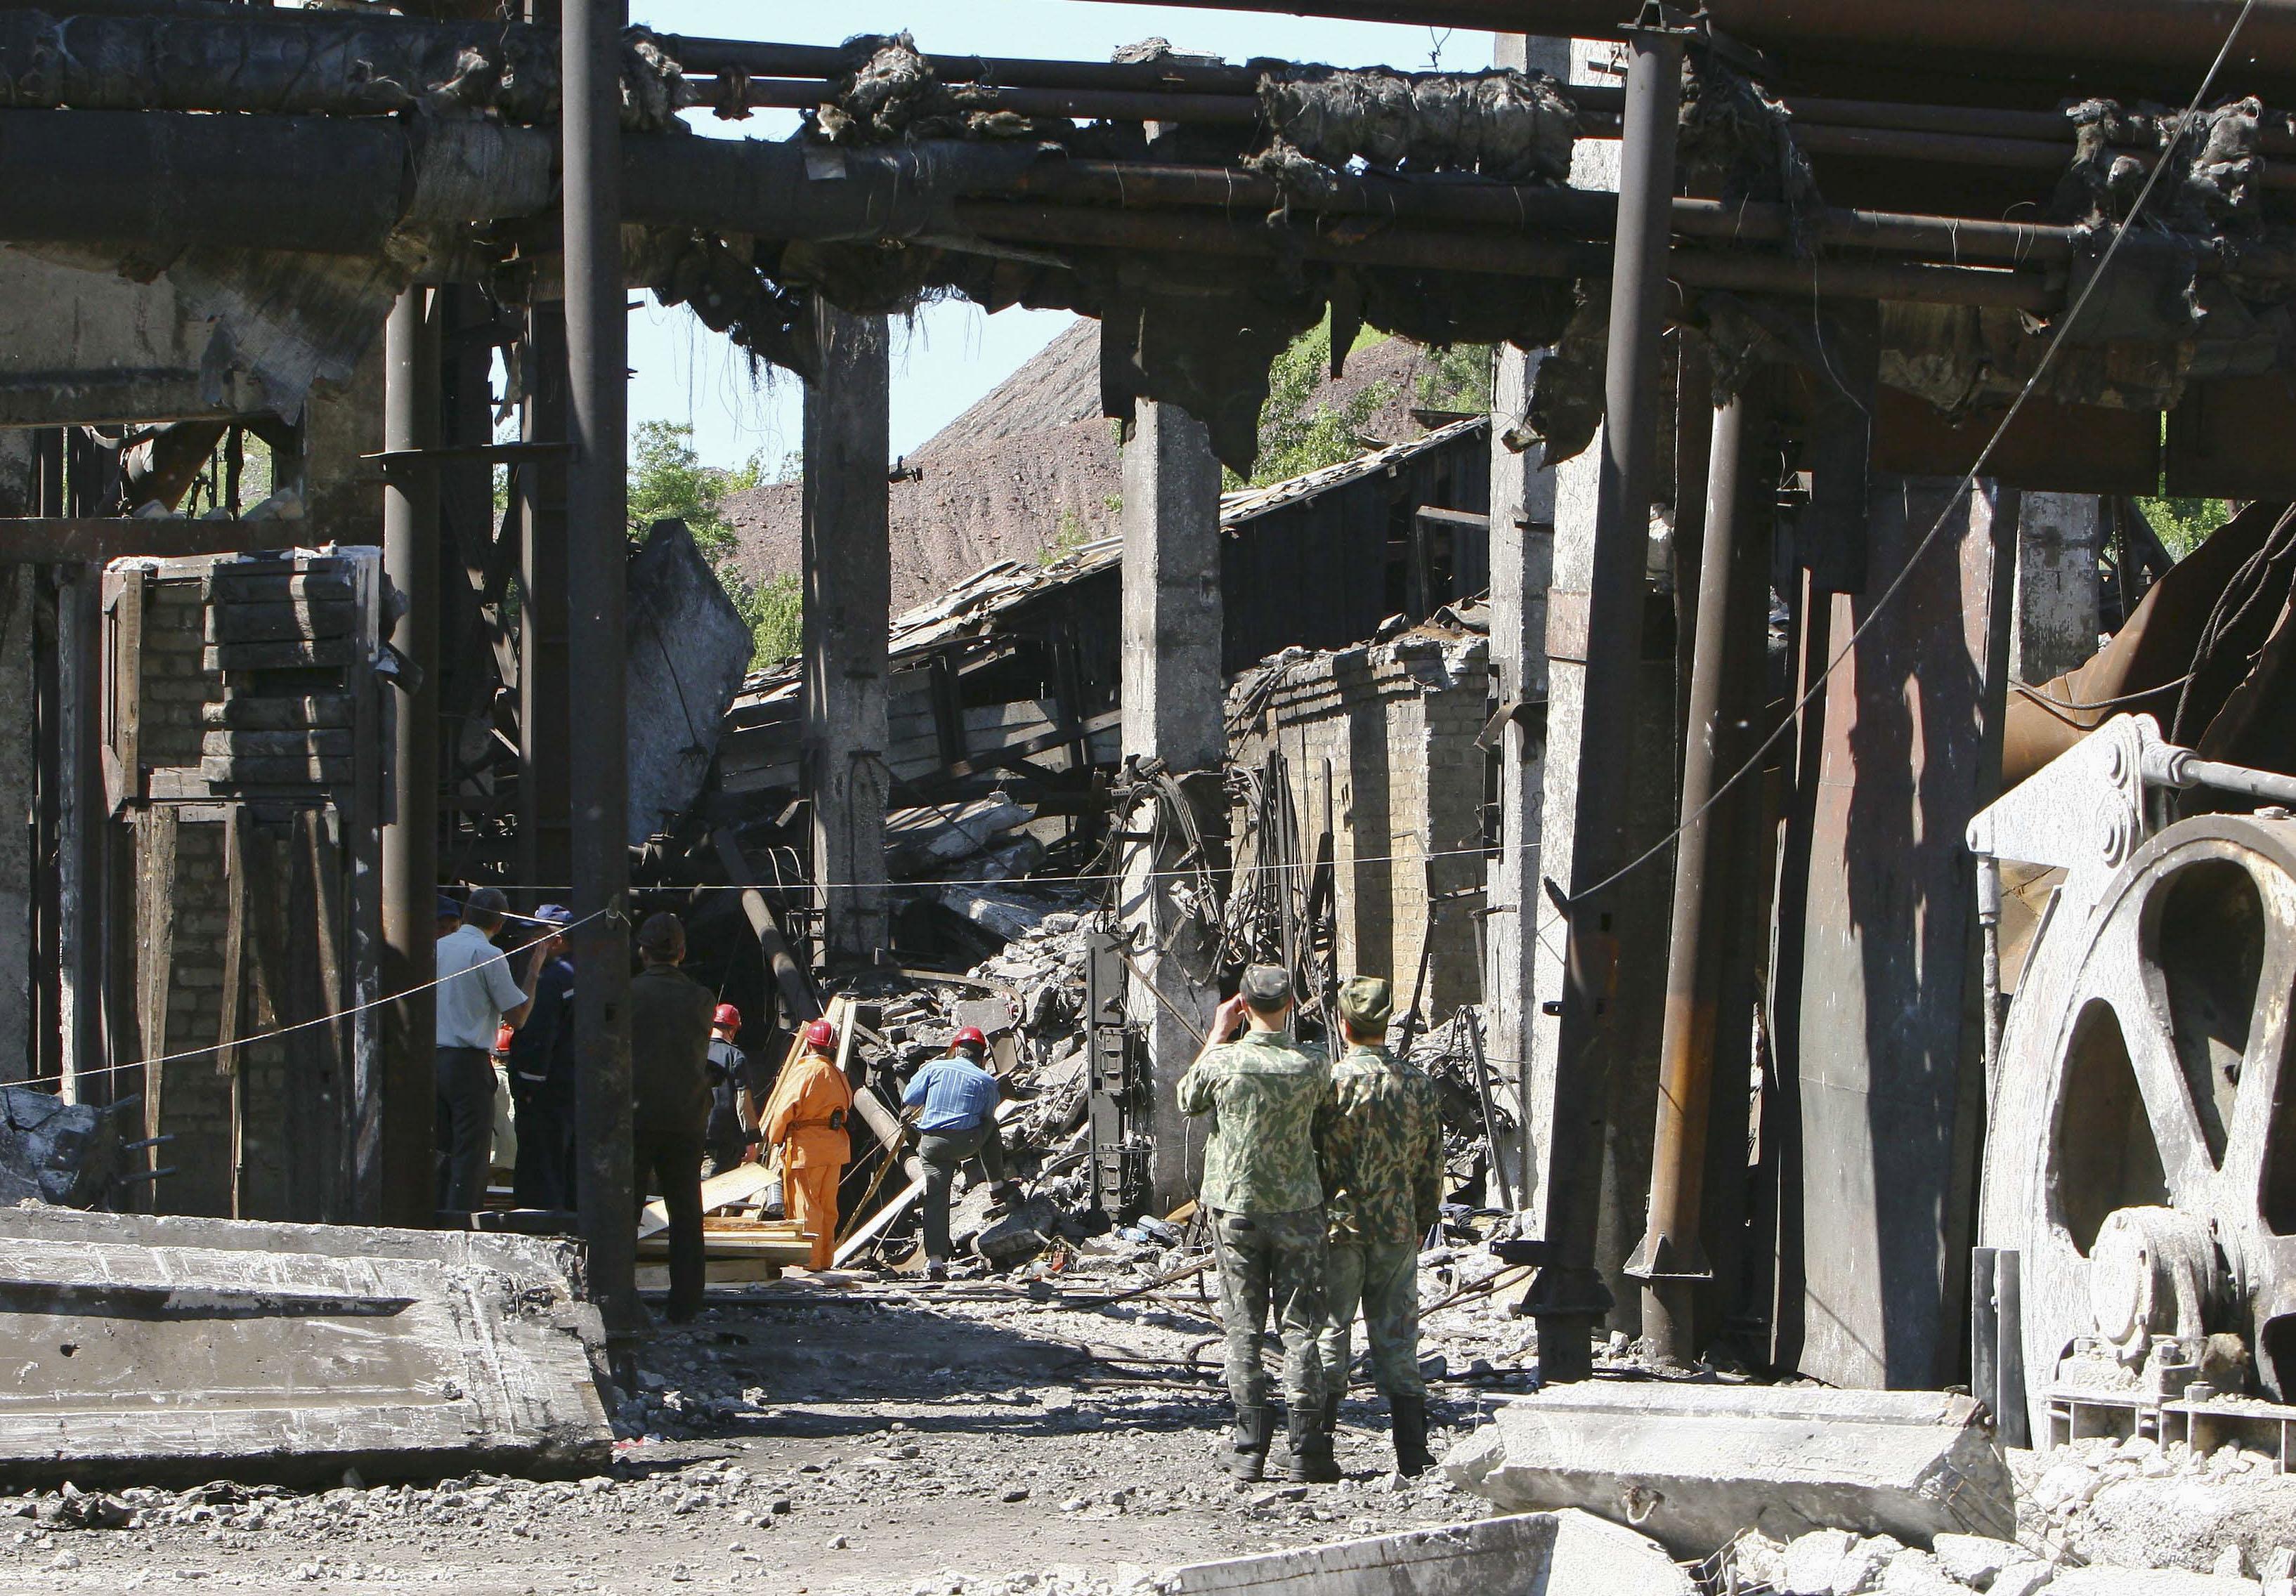 De ukrainska gruvorna är väl kända för sin säkerhetsbrist. 
Bilden är tagen efter en explosion från 2009 vid en annan ukarinsk gruva.